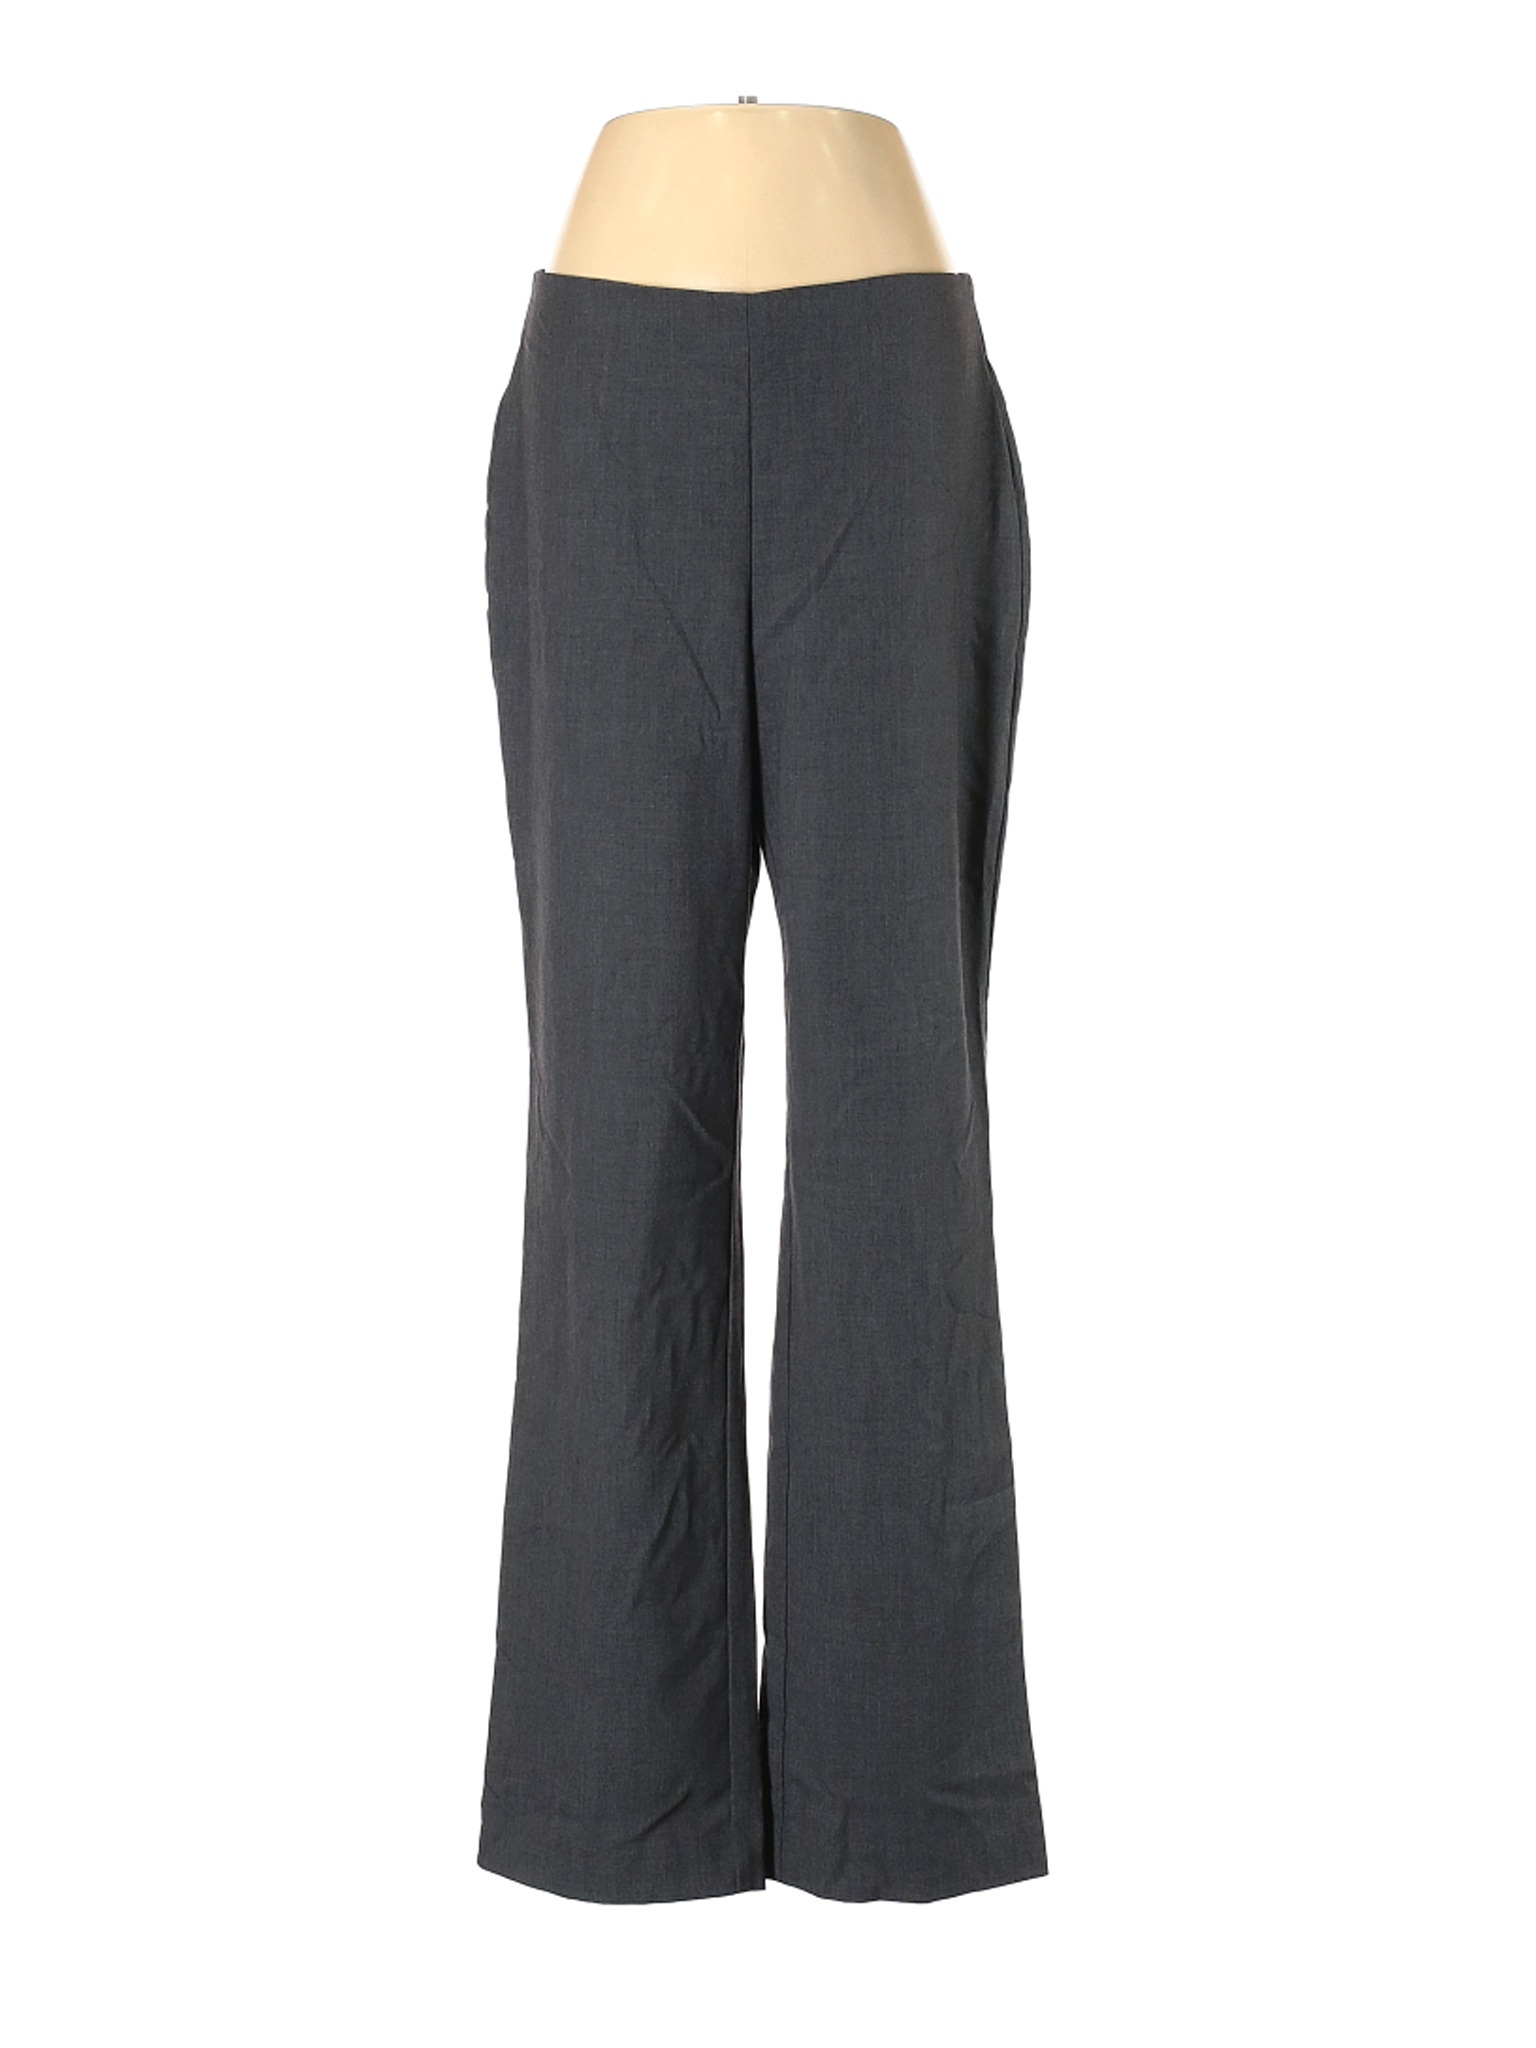 Croft & Barrow Women Gray Dress Pants 8 | eBay